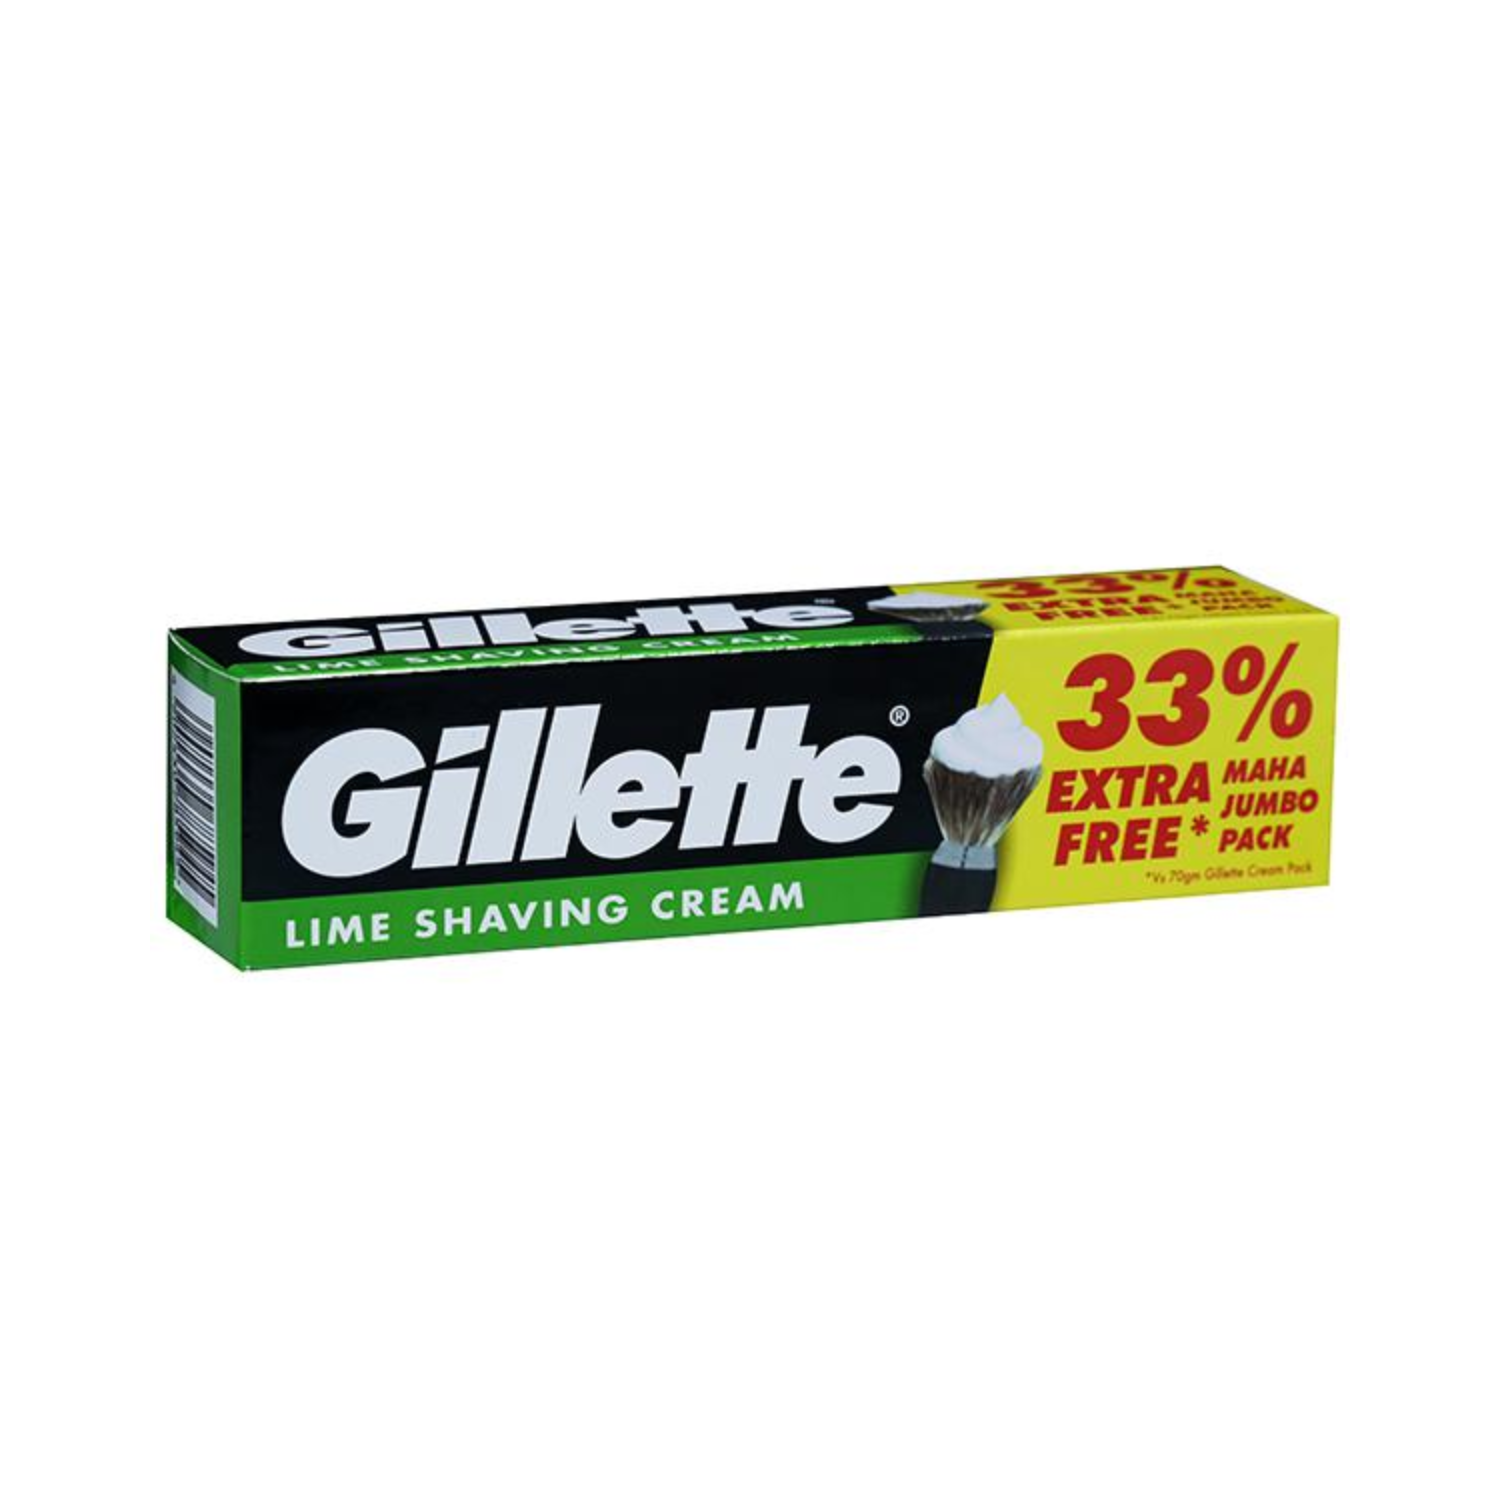 gillette-lime-shaving-cream-33-extra-free-maha-jumbo-pack-93g